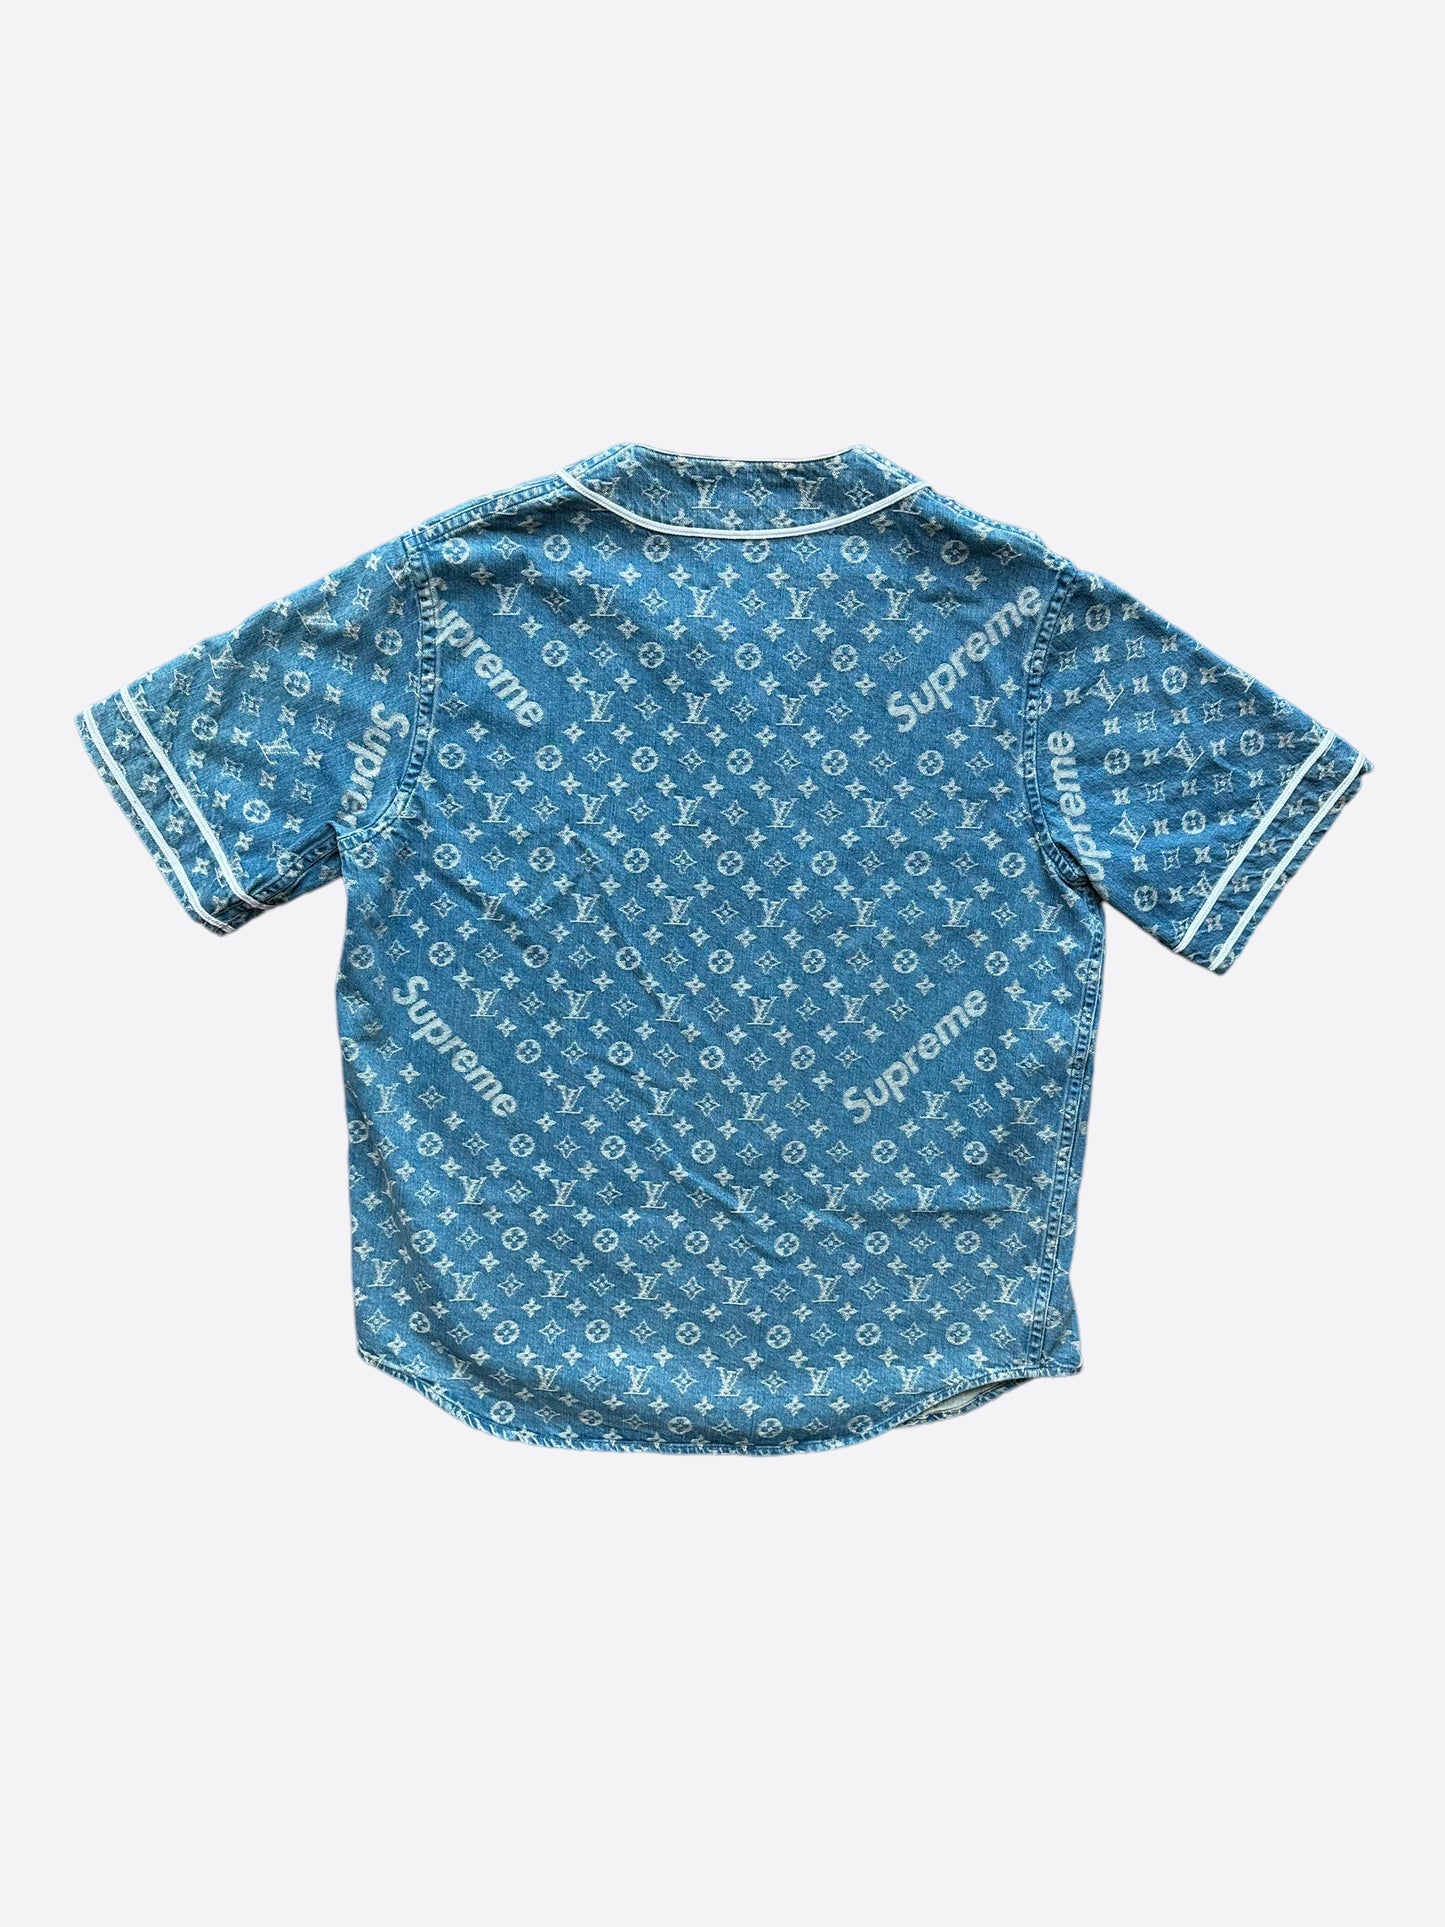 Louis Vuitton Blue Text Pattern Baseball Jersey Clothes Sport For Men Women